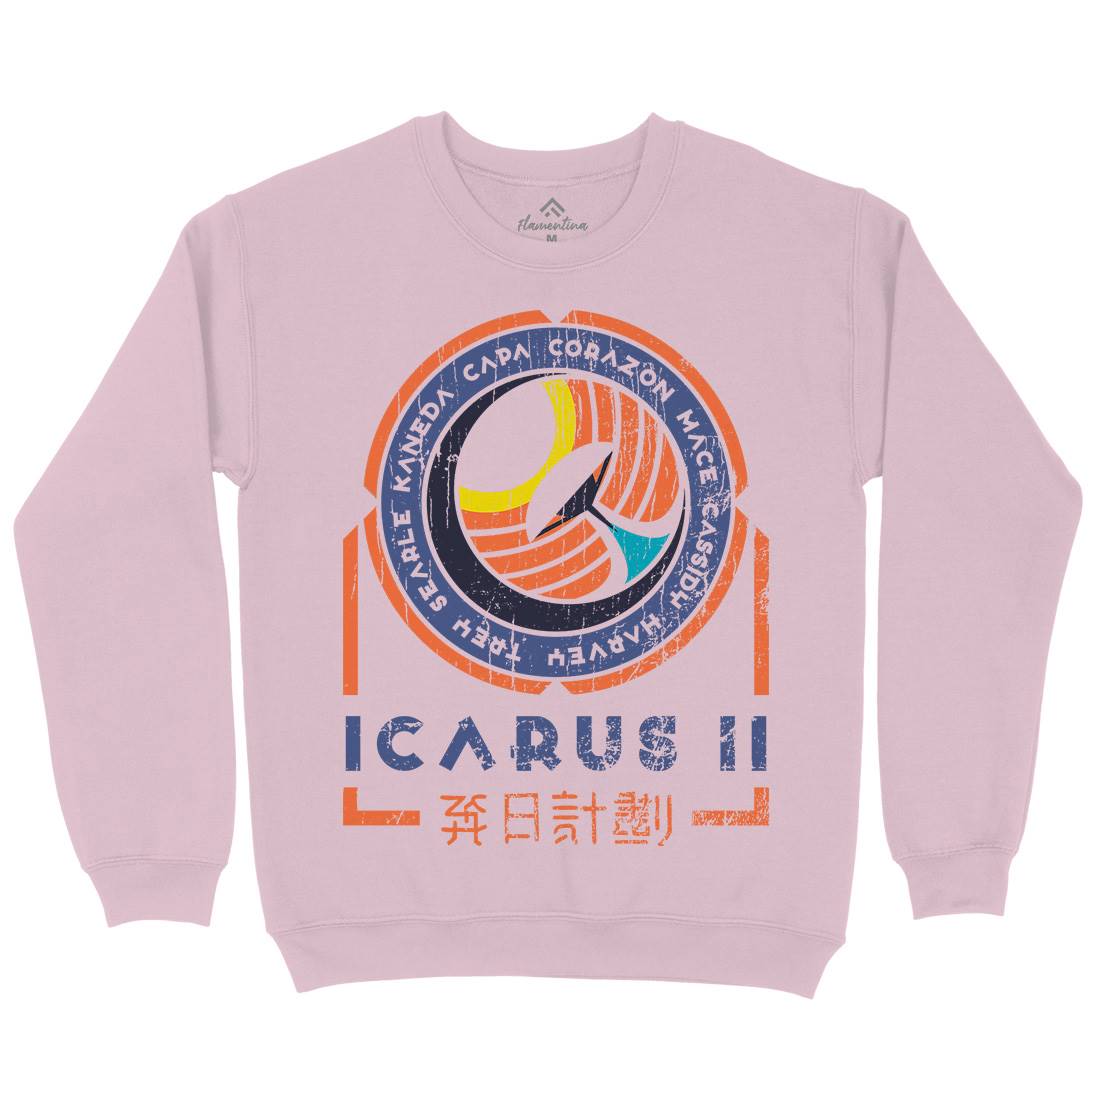 Icarus Ii Kids Crew Neck Sweatshirt Space D233